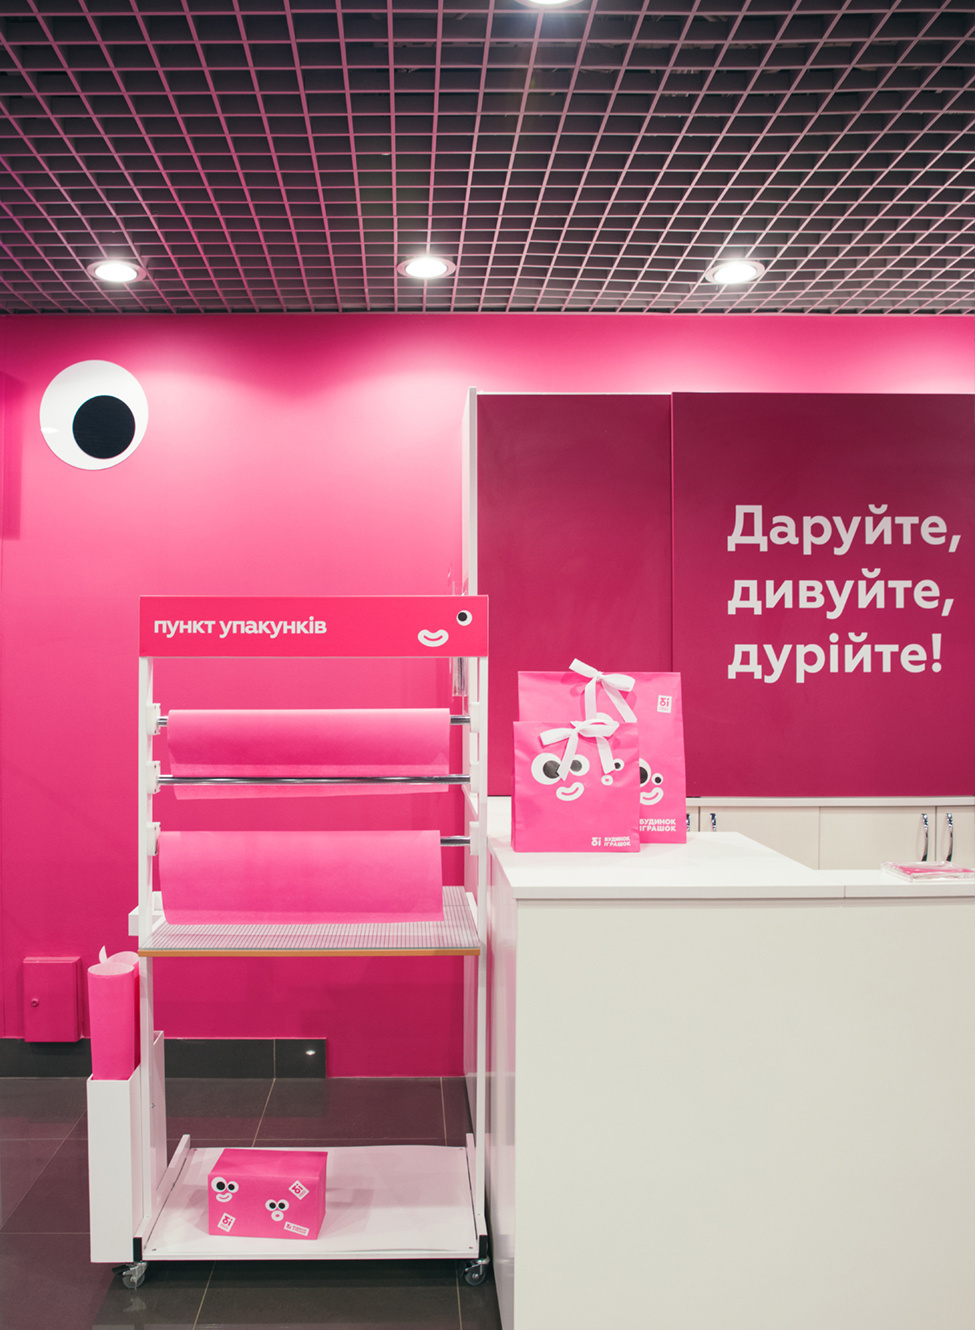 乌克兰玩具连锁商店品牌VI设计